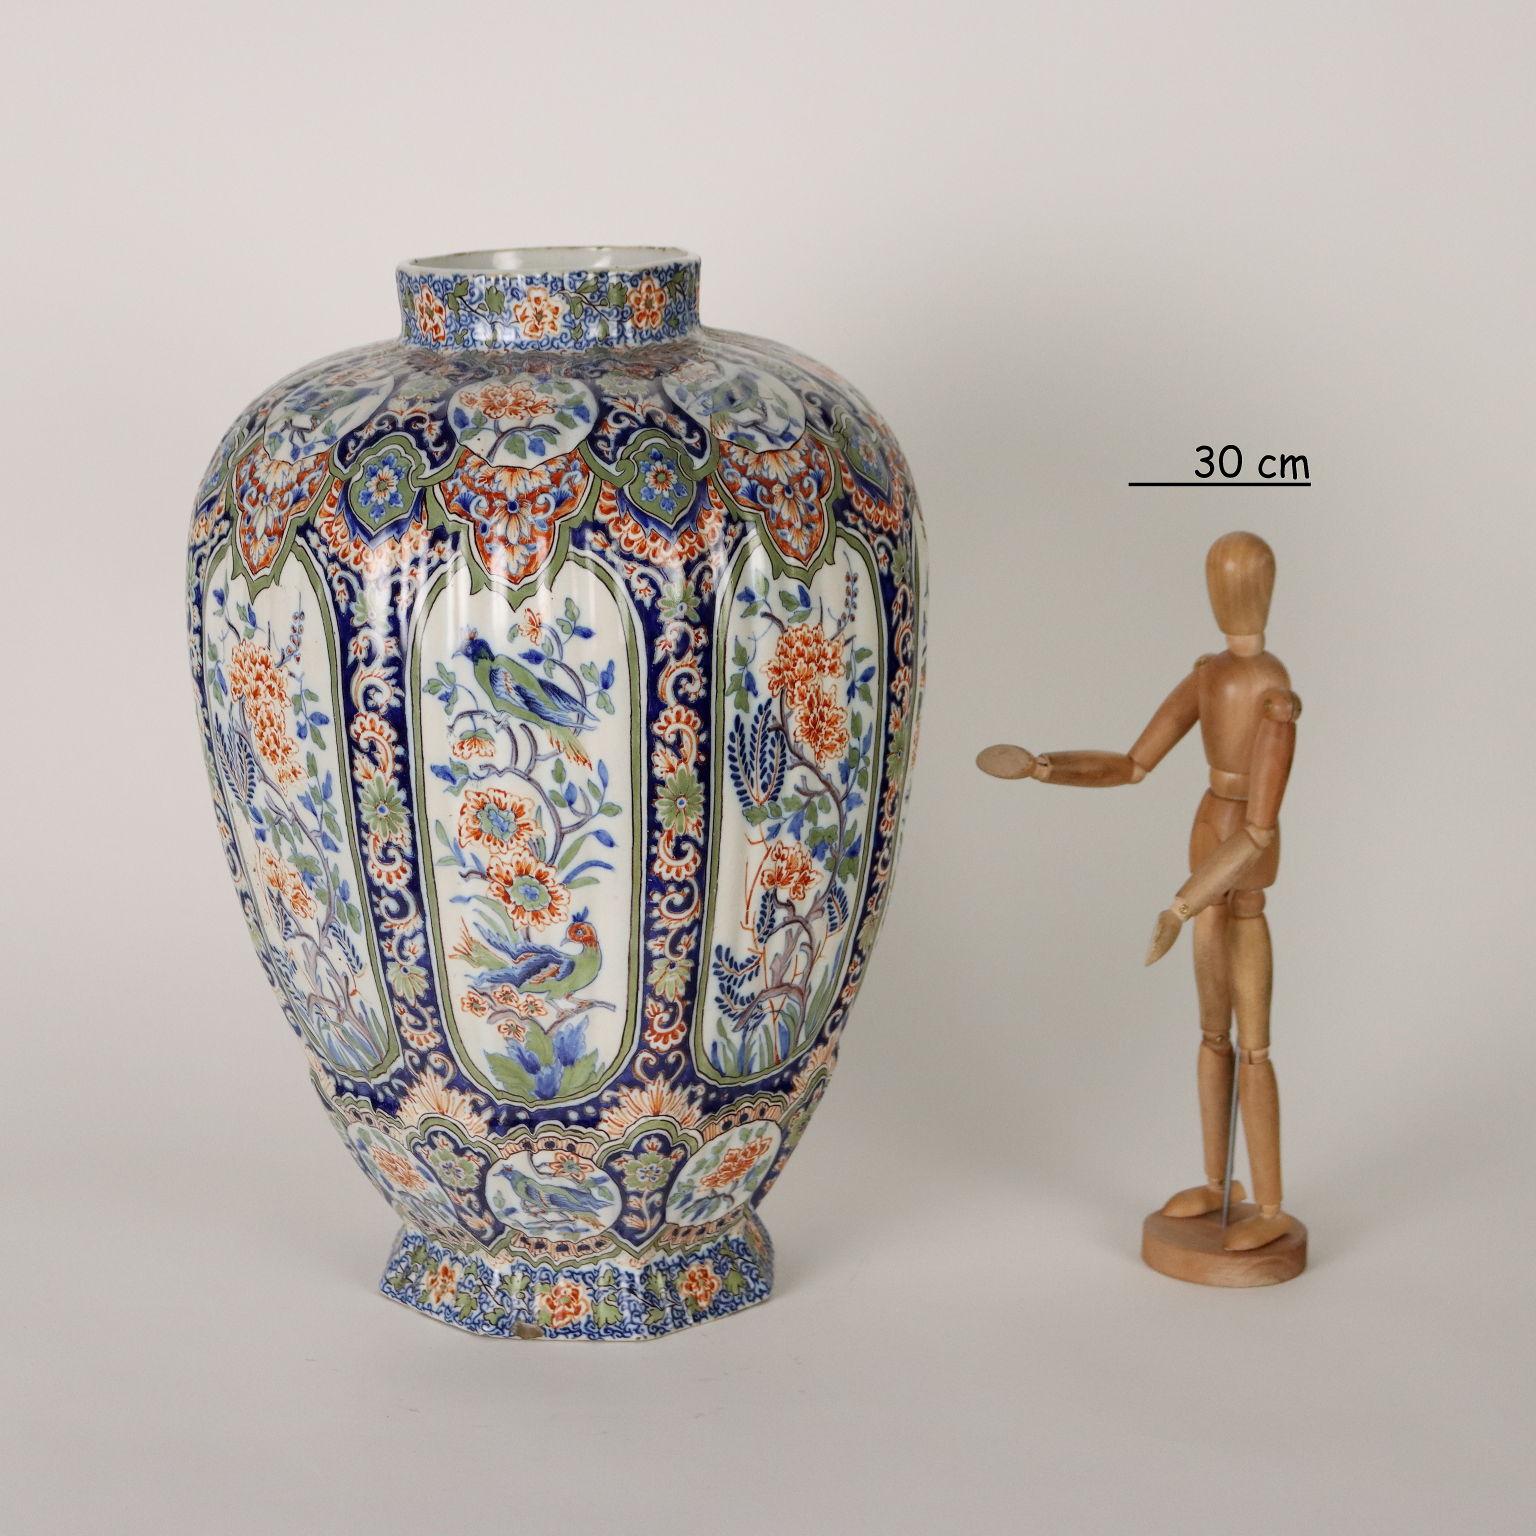 Vase en céramique avec des décorations en plein champ avec des motifs végétaux et animaux. Sous la marque de base du fabricant.